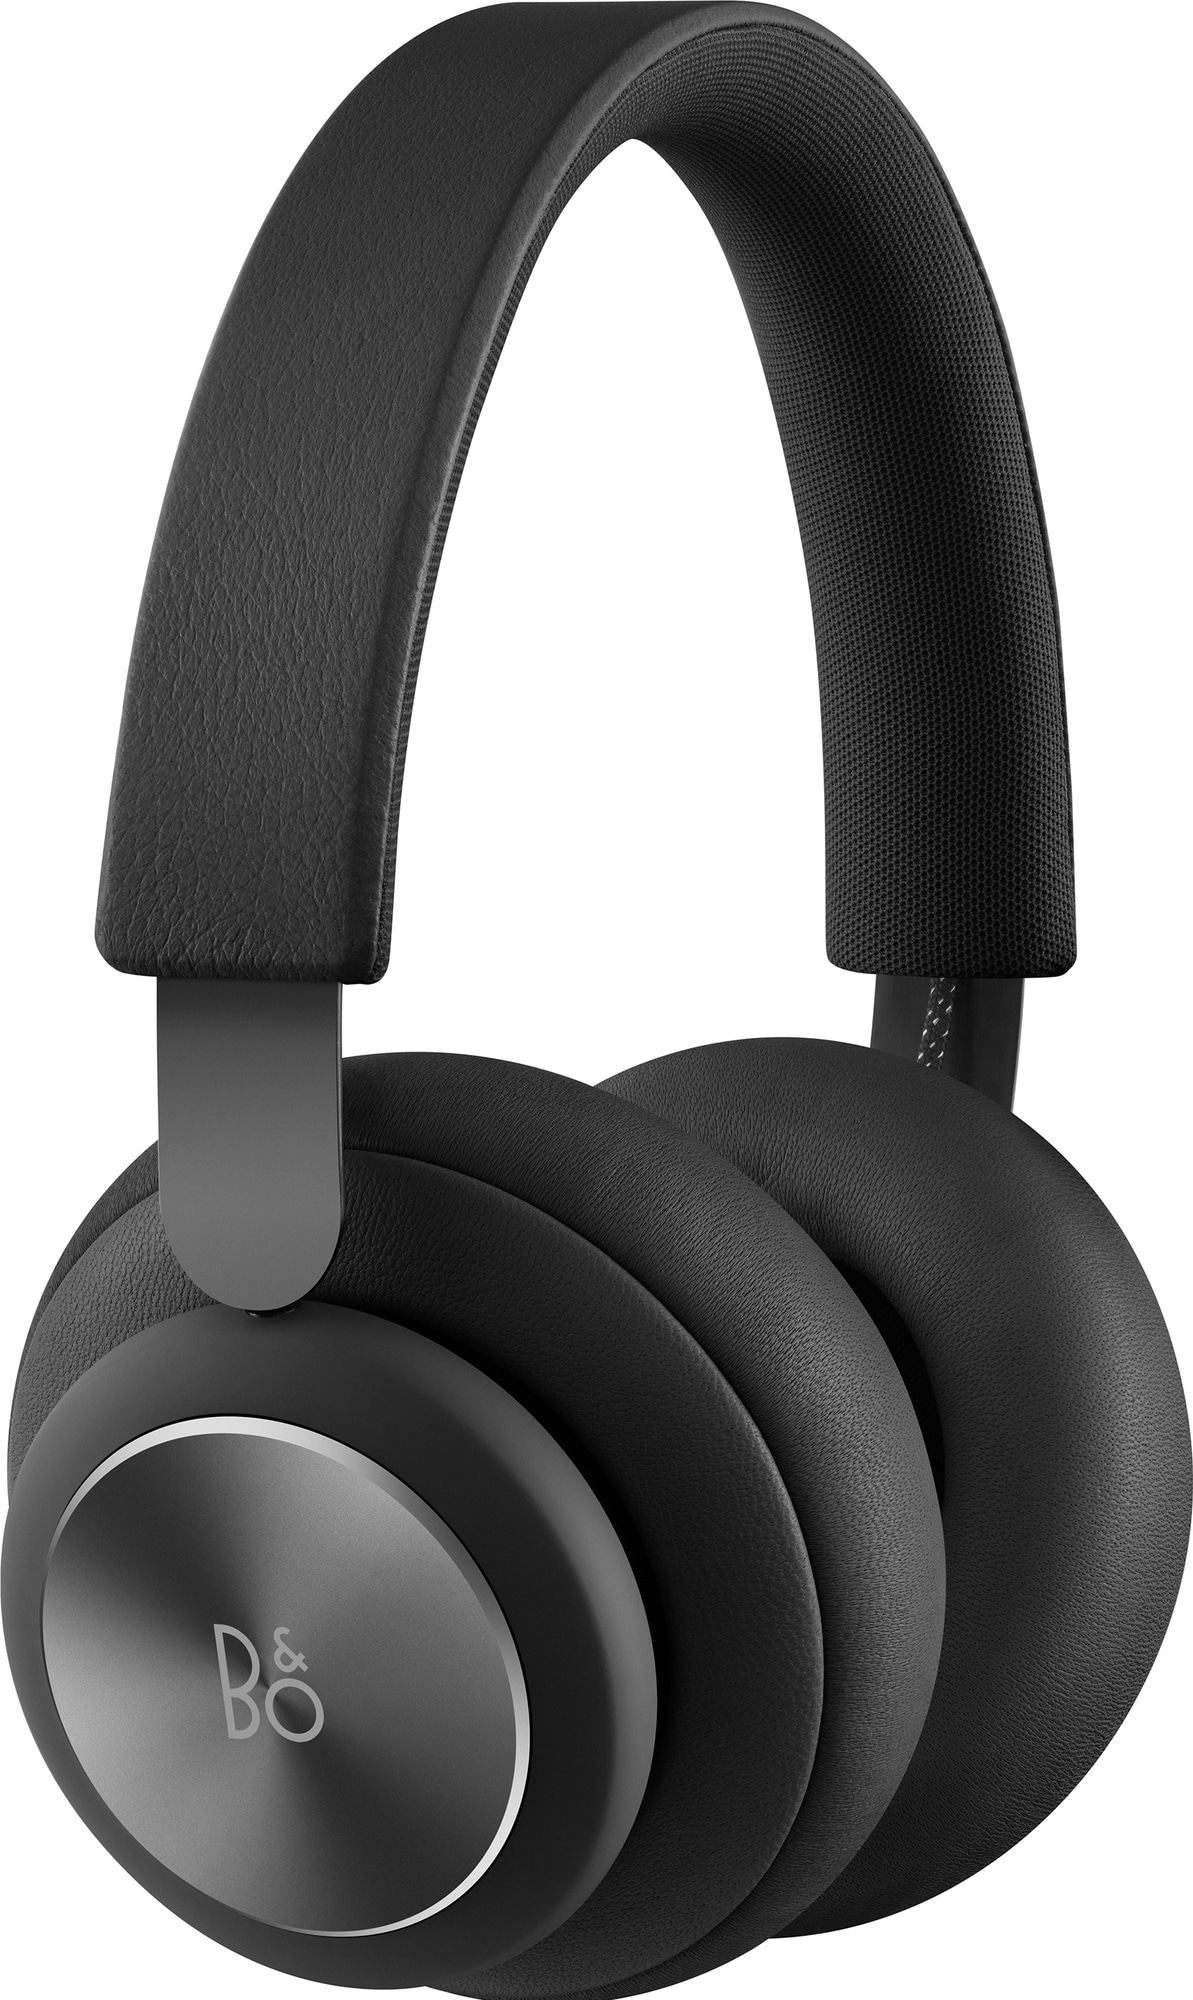 B&O Beoplay H4 2. gen. trådløse on-ear høretelefoner (sort) | Elgiganten